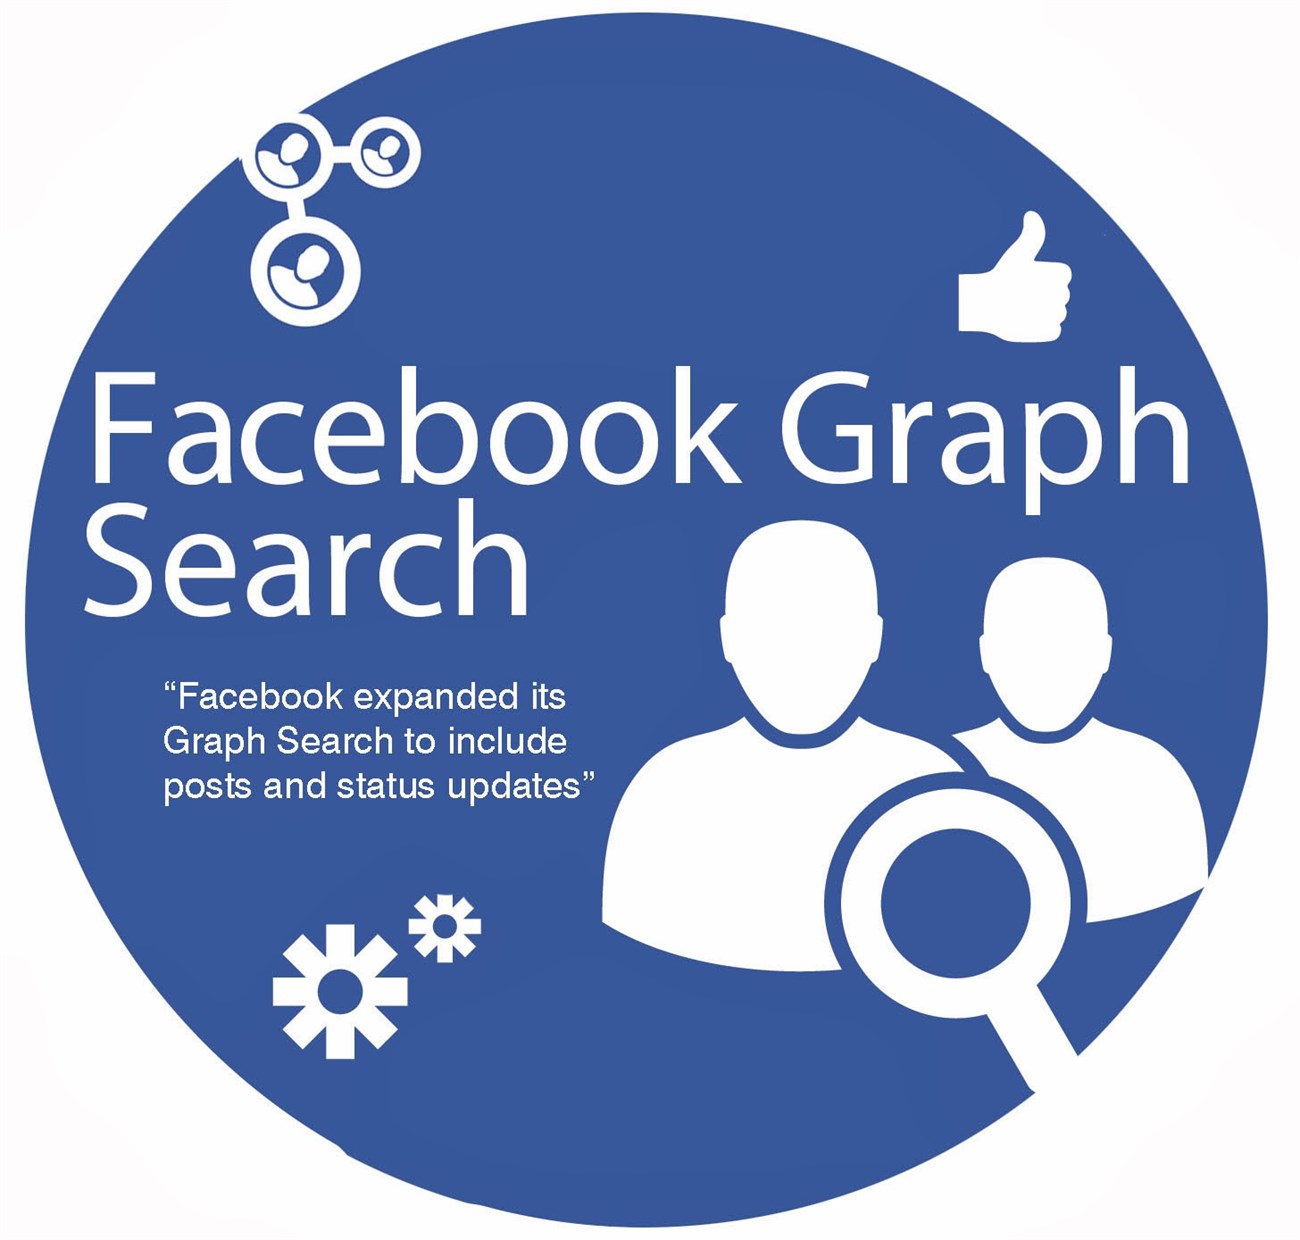 Cách tìm ra ảnh của bạn bè đã ẩn trên Facebook trong nháy mắt Facebook-graph-search-2